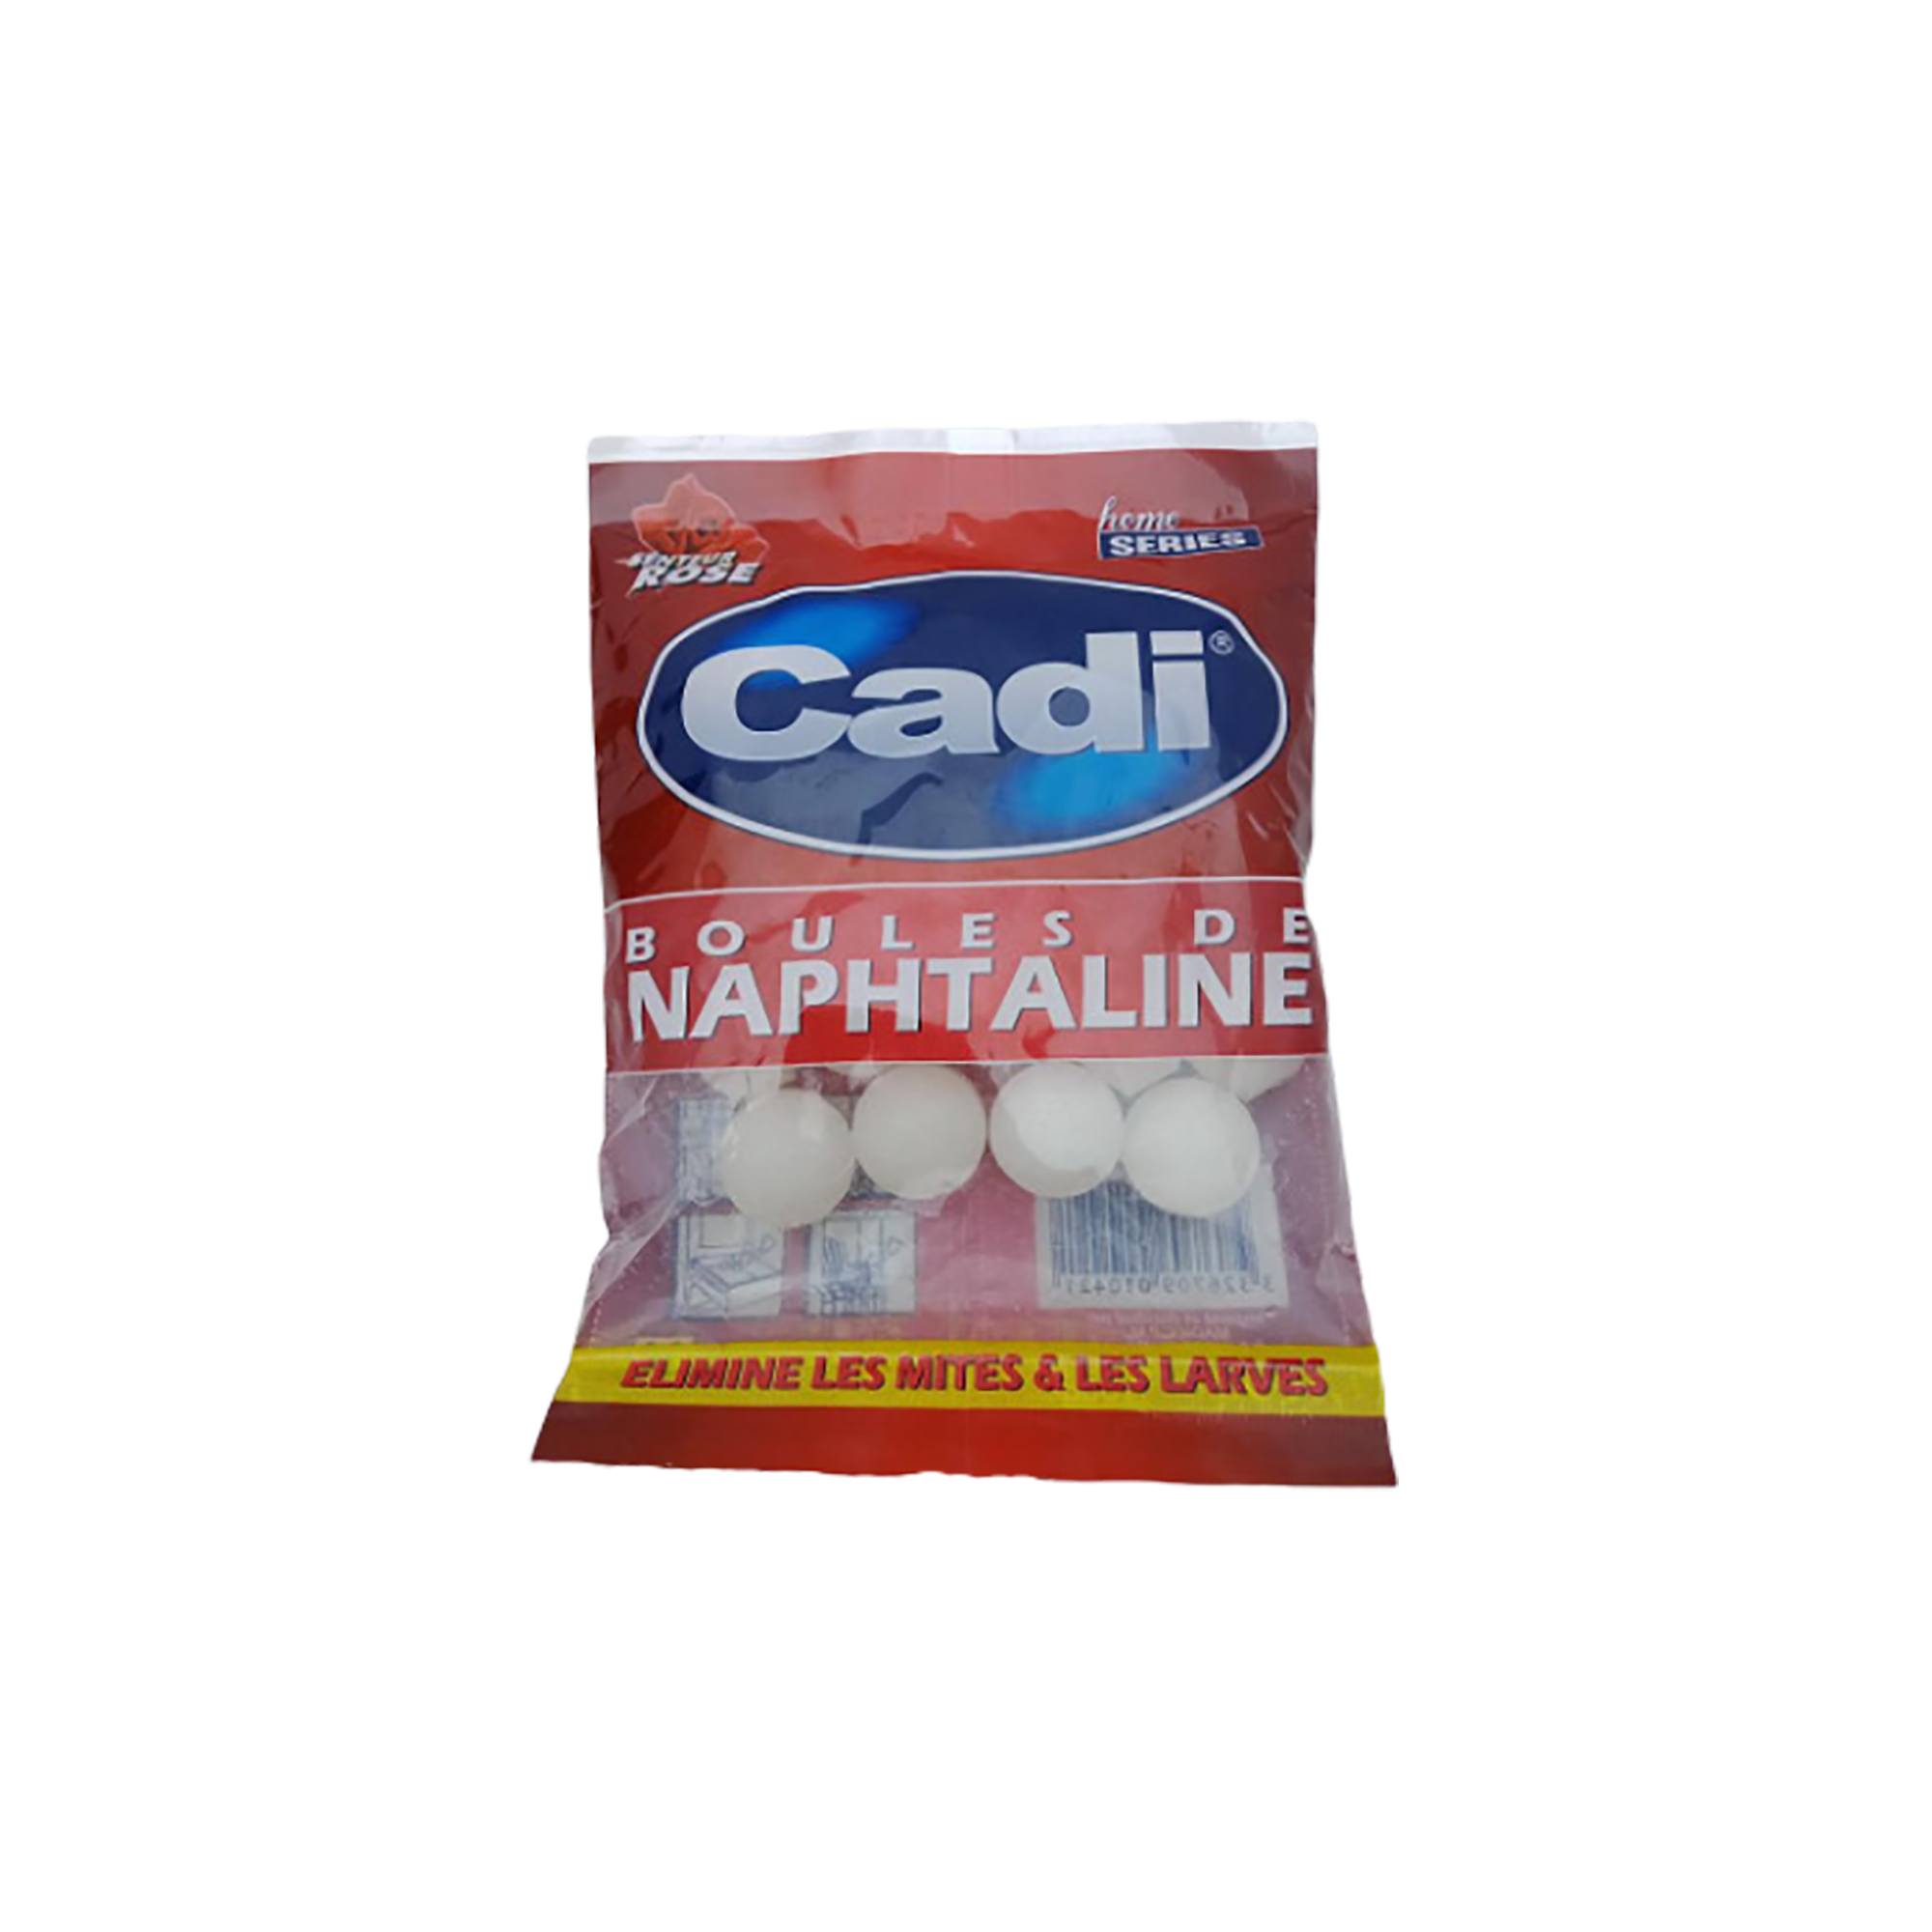 Naphtaline boules anti mites - Comparez les prix et achetez sur